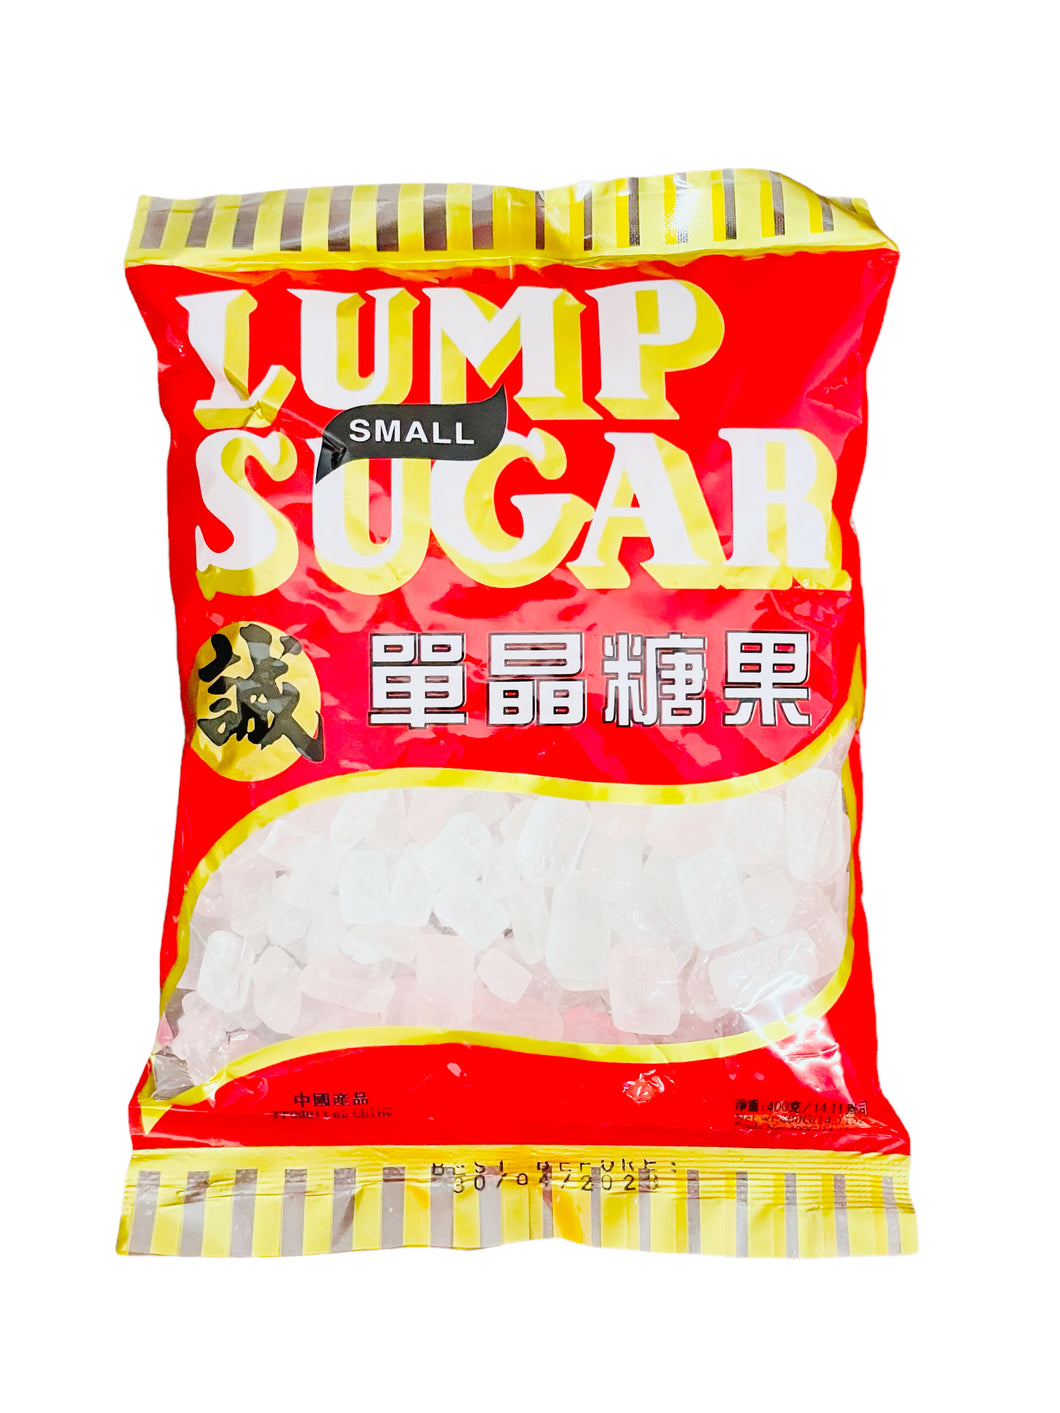 Lump Sugar 400g 诚单晶糖果 特价2 包 只需TT20.00